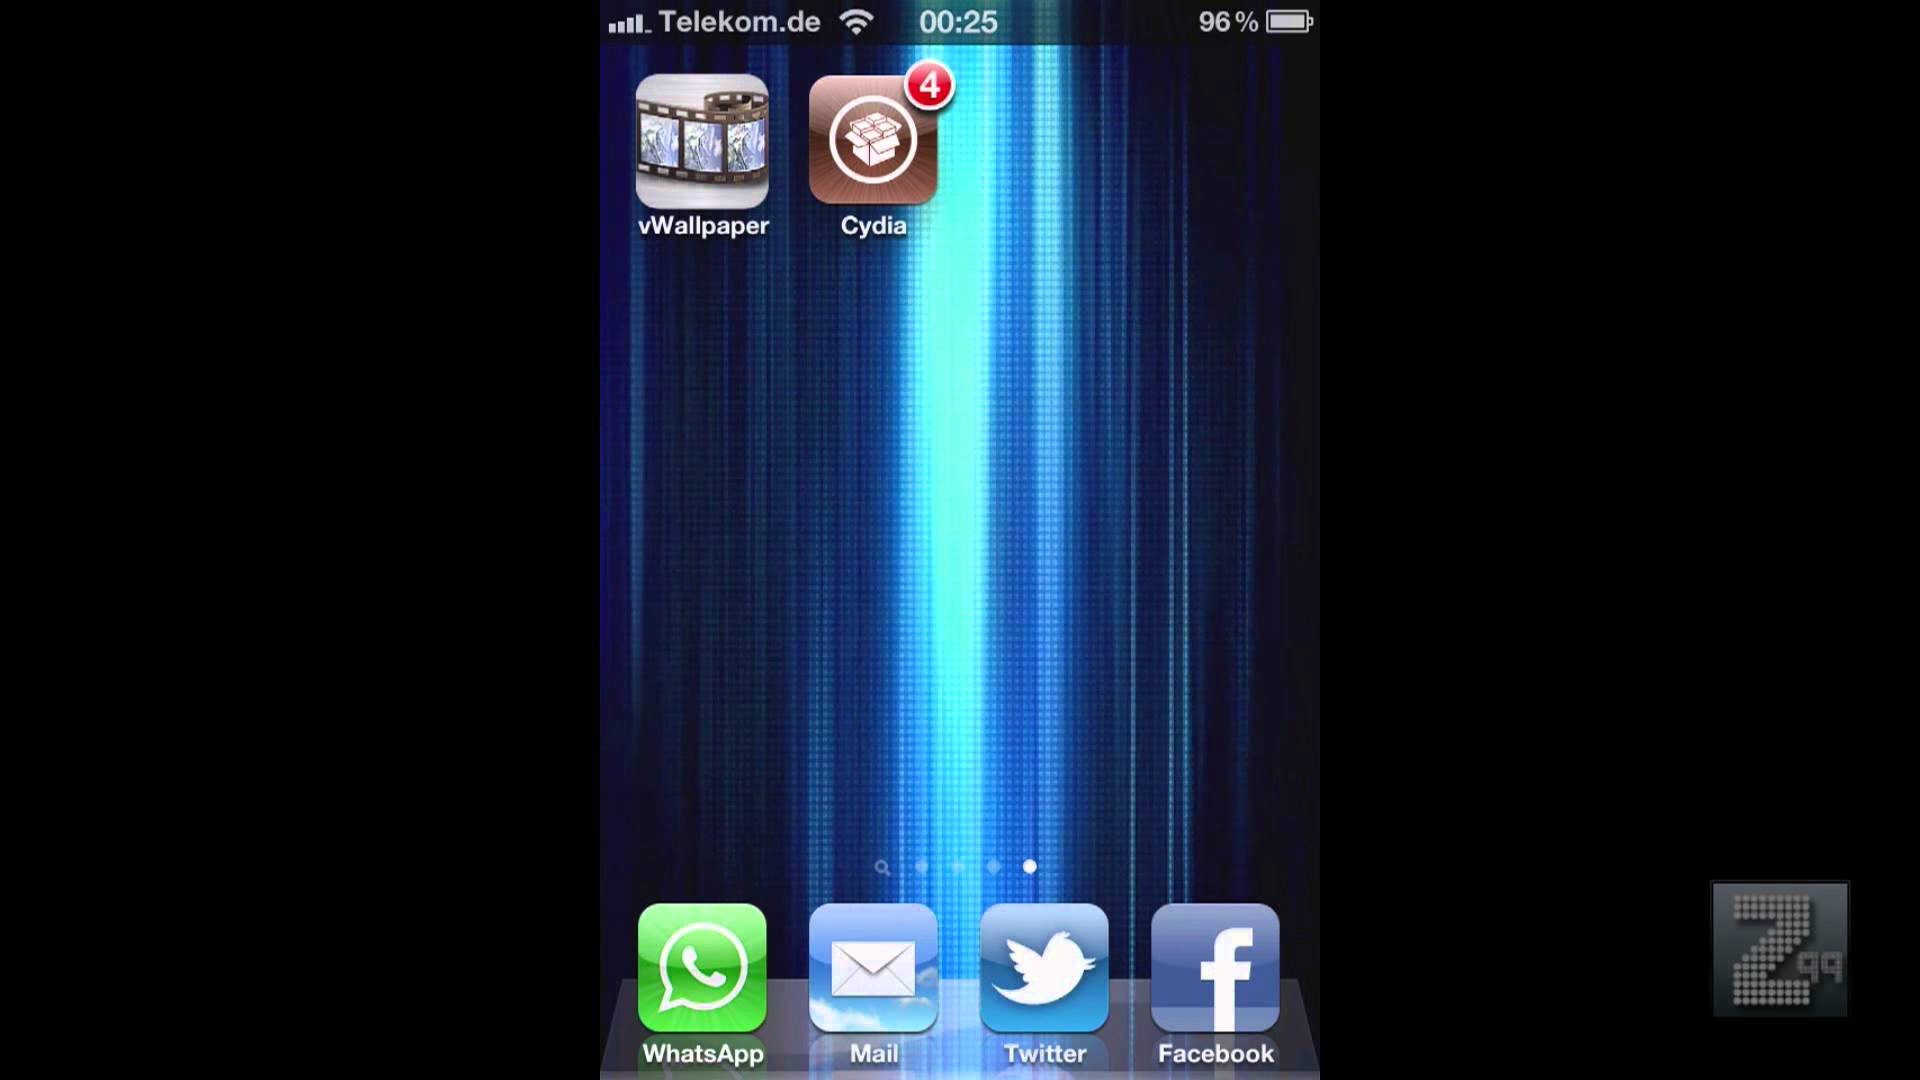 Hintergrund iPhone iPad Und Ipod Touch Vwallpaper